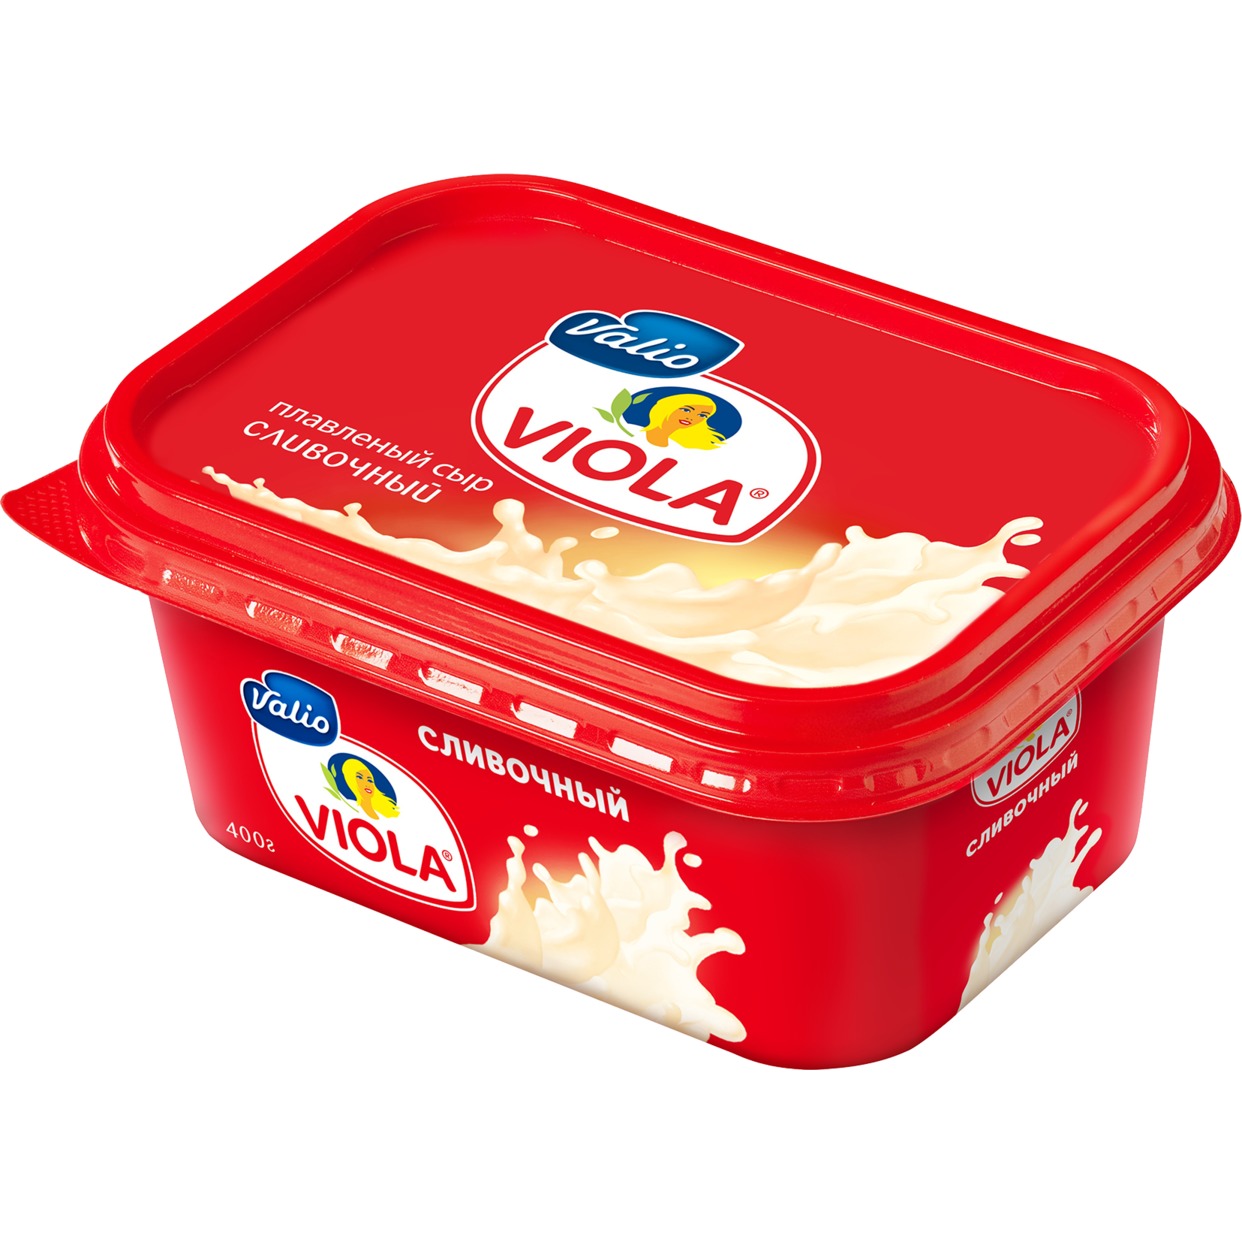 Сыр Виола, сливочный, Valio, 400 г